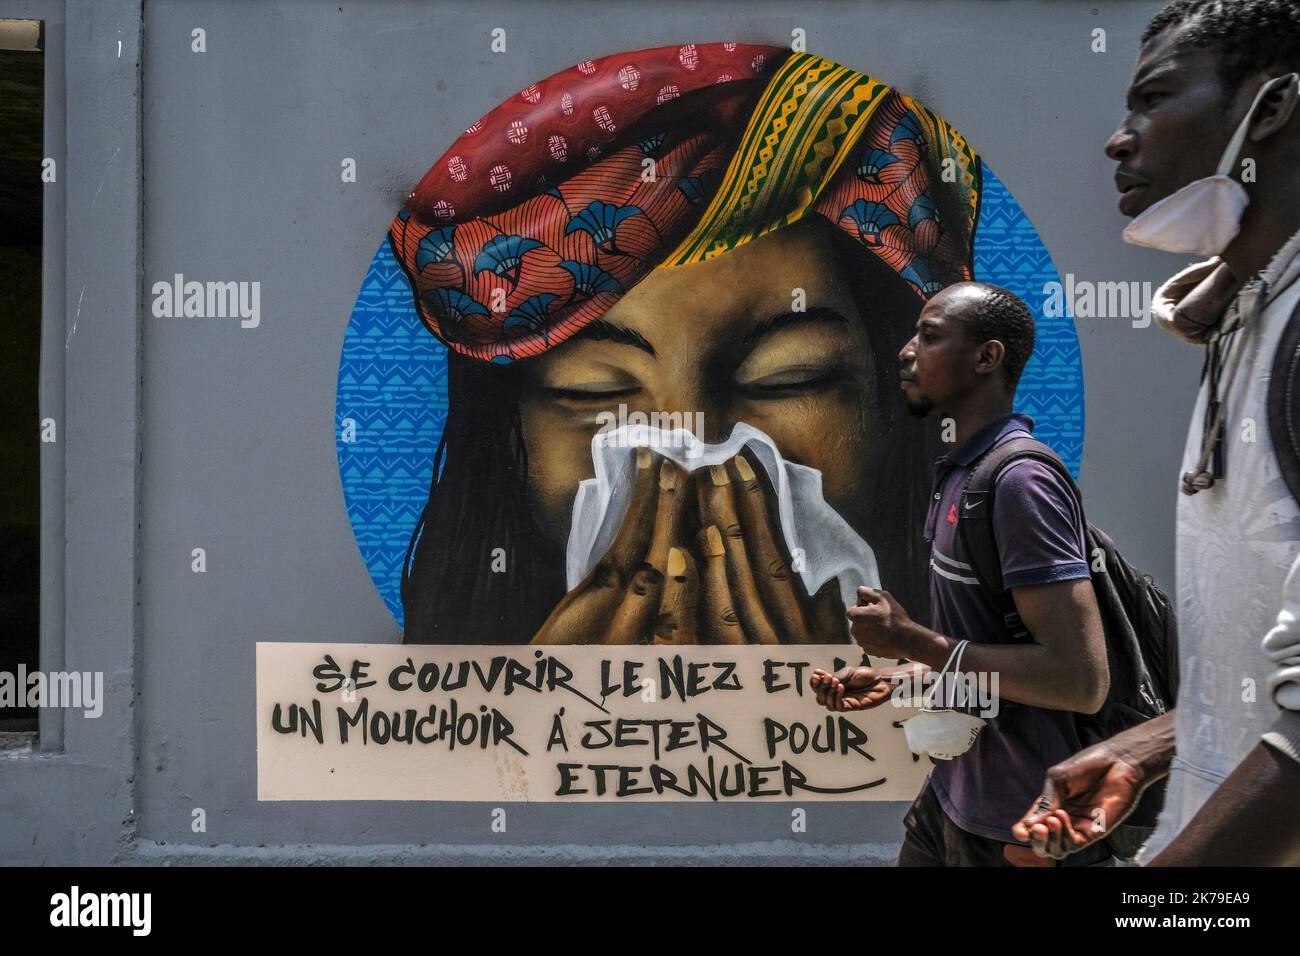 Senegal / Dakar / Dakar - i giovani passano davanti ai graffiti dipinti presso l'Università di Dakar per sensibilizzare sulle misure igieniche per combattere il Covid-19. Foto Stock